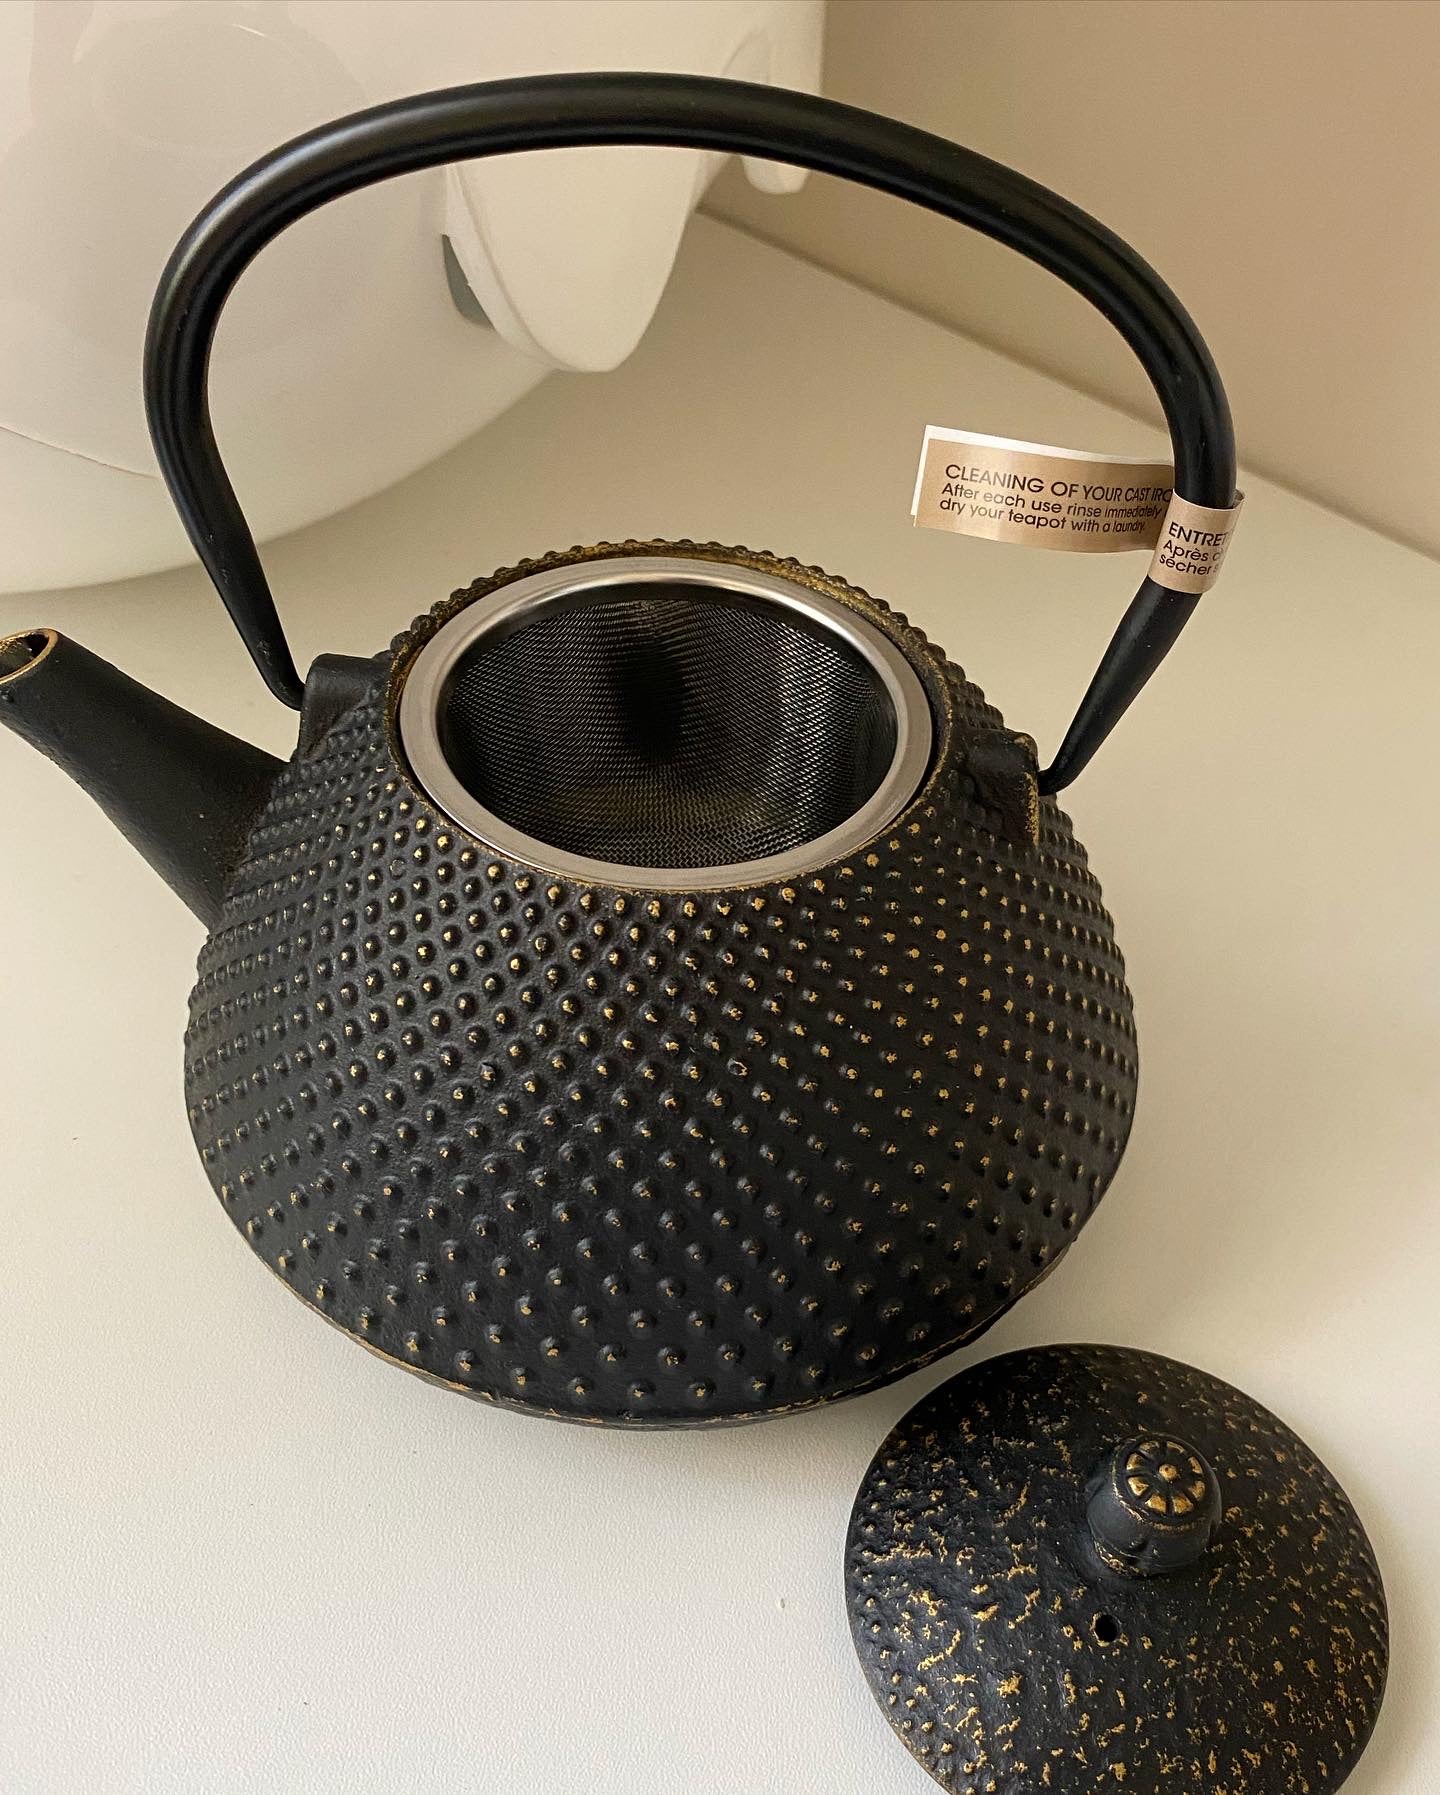 Iron teapot 800ml